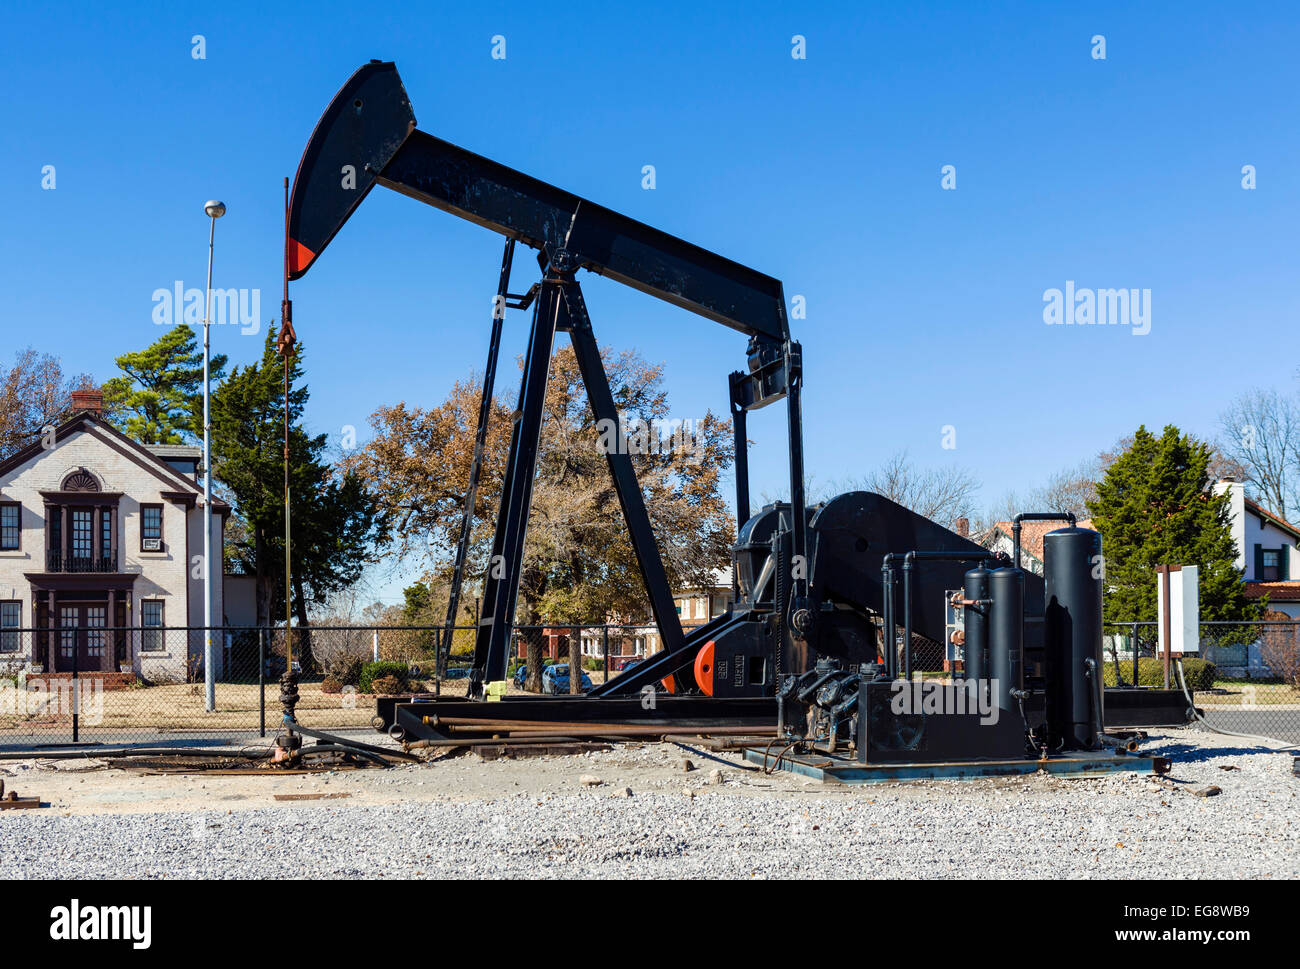 Puits de pétrole dans un environnement urbain, N Lincoln Blvd, Oklahoma City, OK, États-Unis d'Amérique Banque D'Images